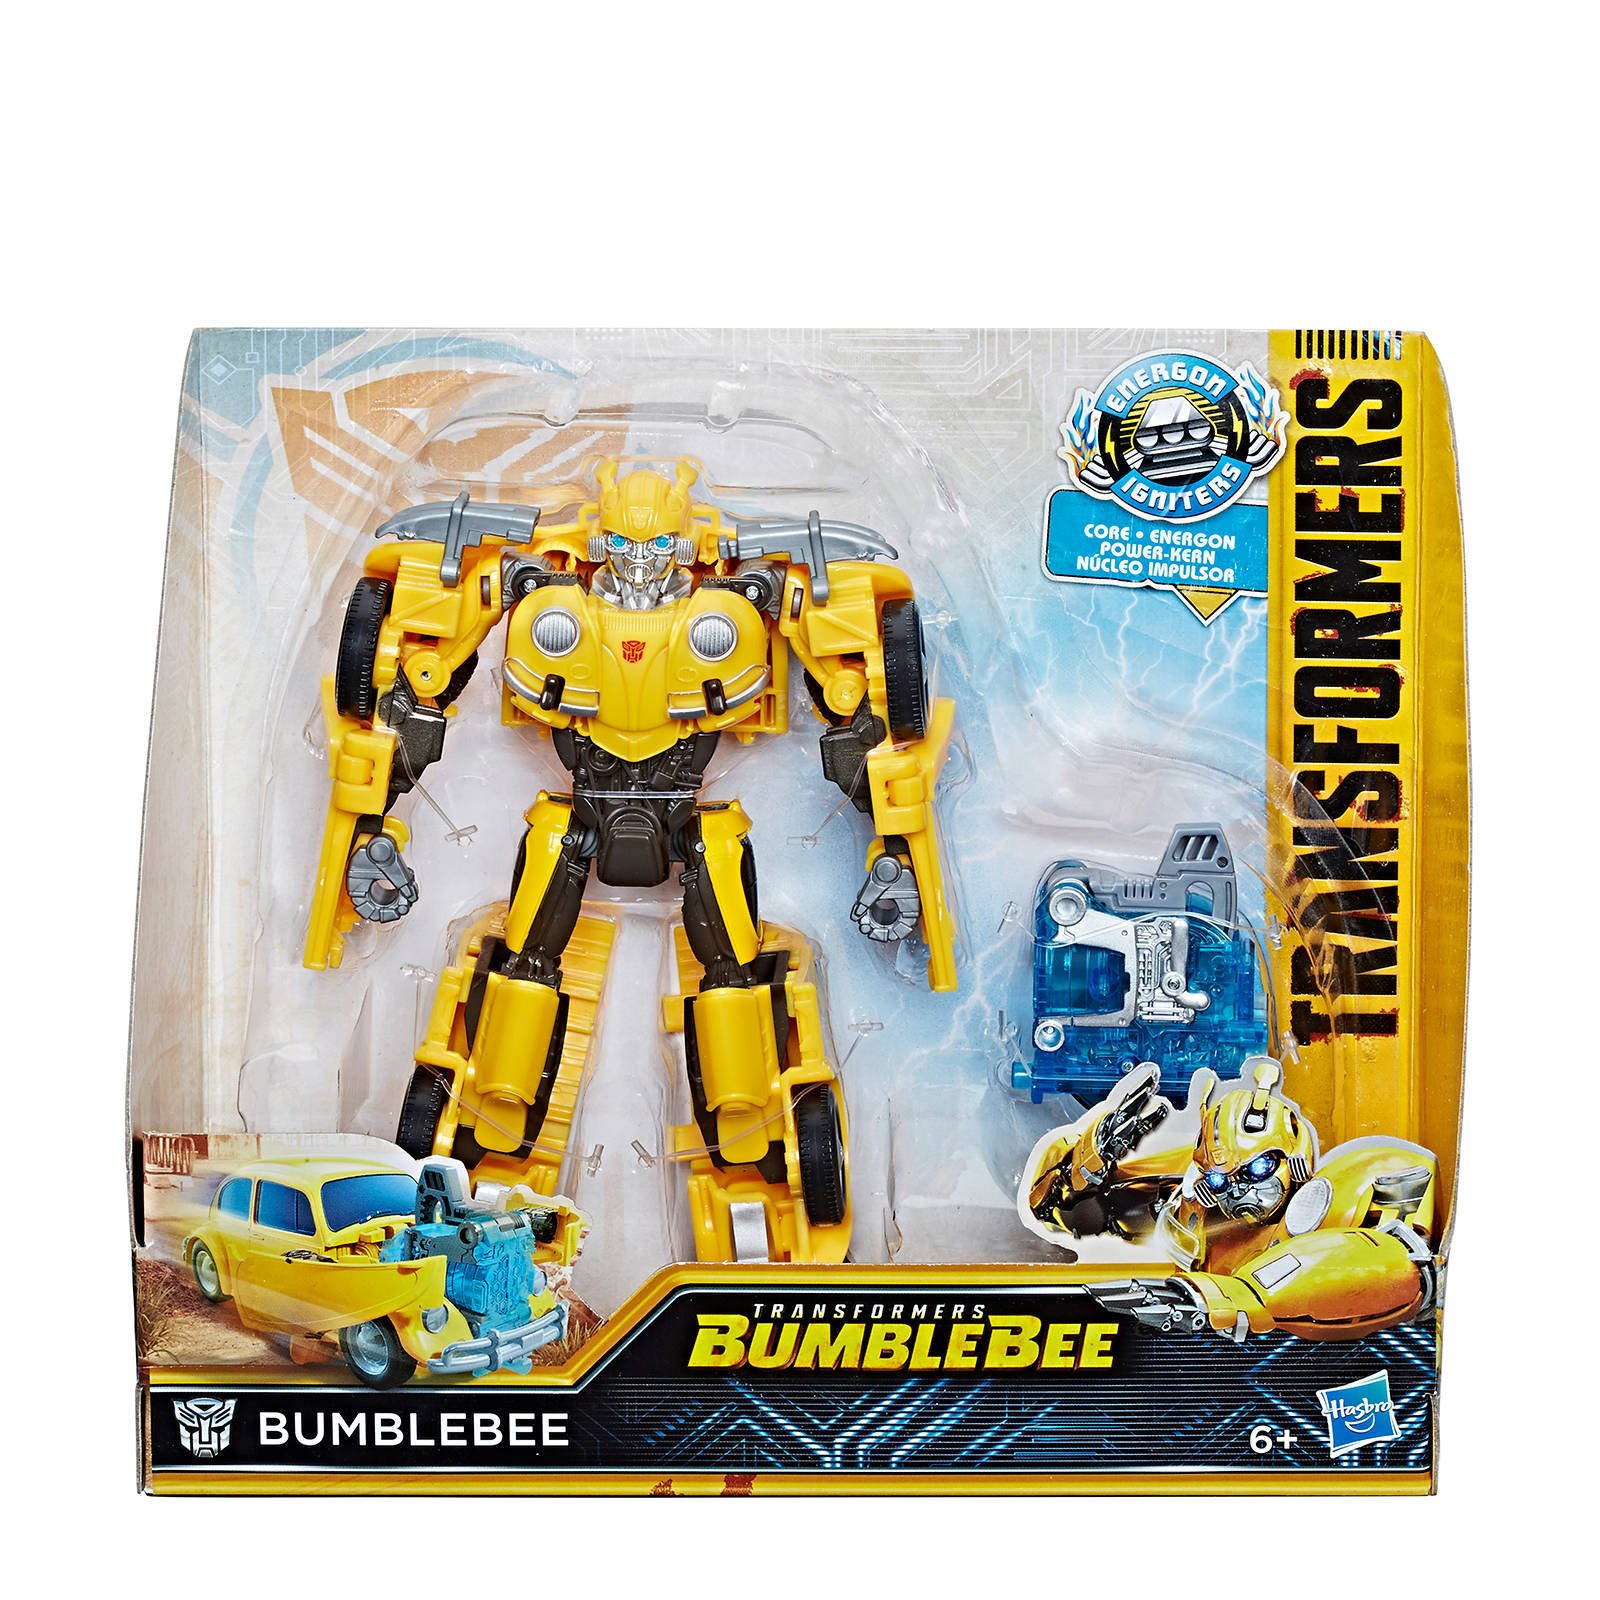 schuld Wapenstilstand tweedehands Transformers: Bumblebee Energon Igniters Bumblebee speelfiguur -  Eerstspeelgoed.nl